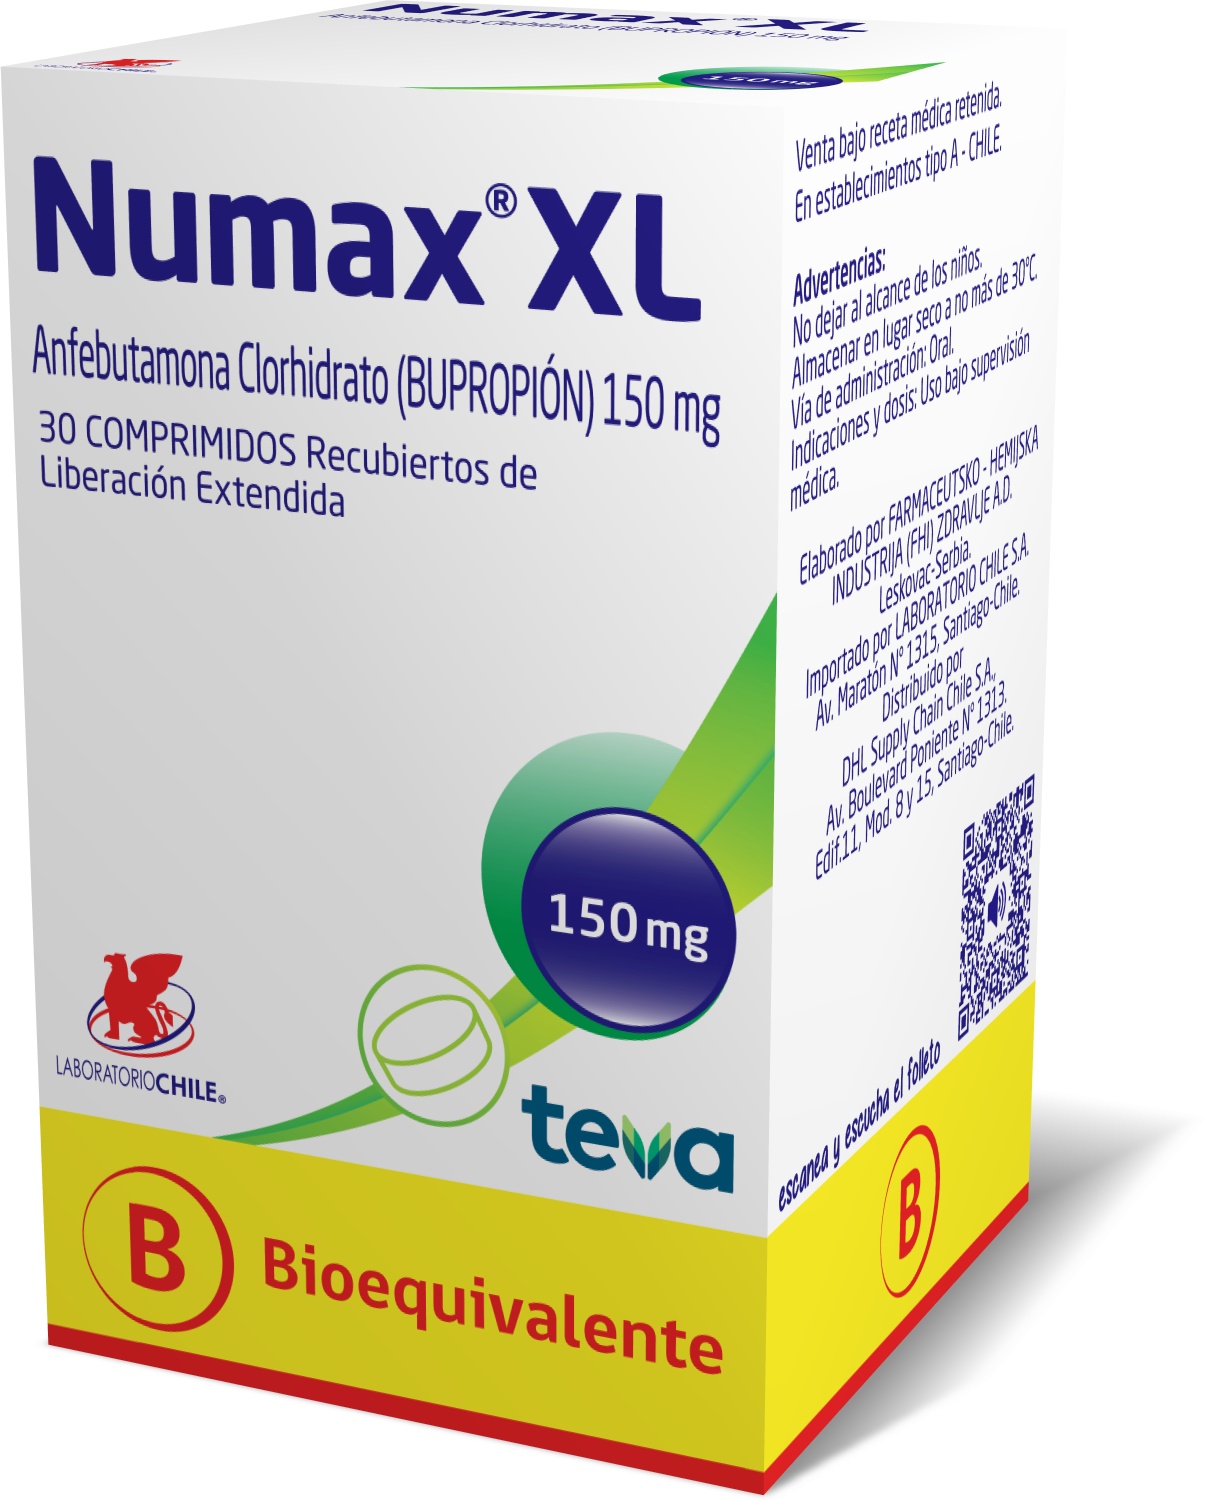 Numax ® XL 150 mg